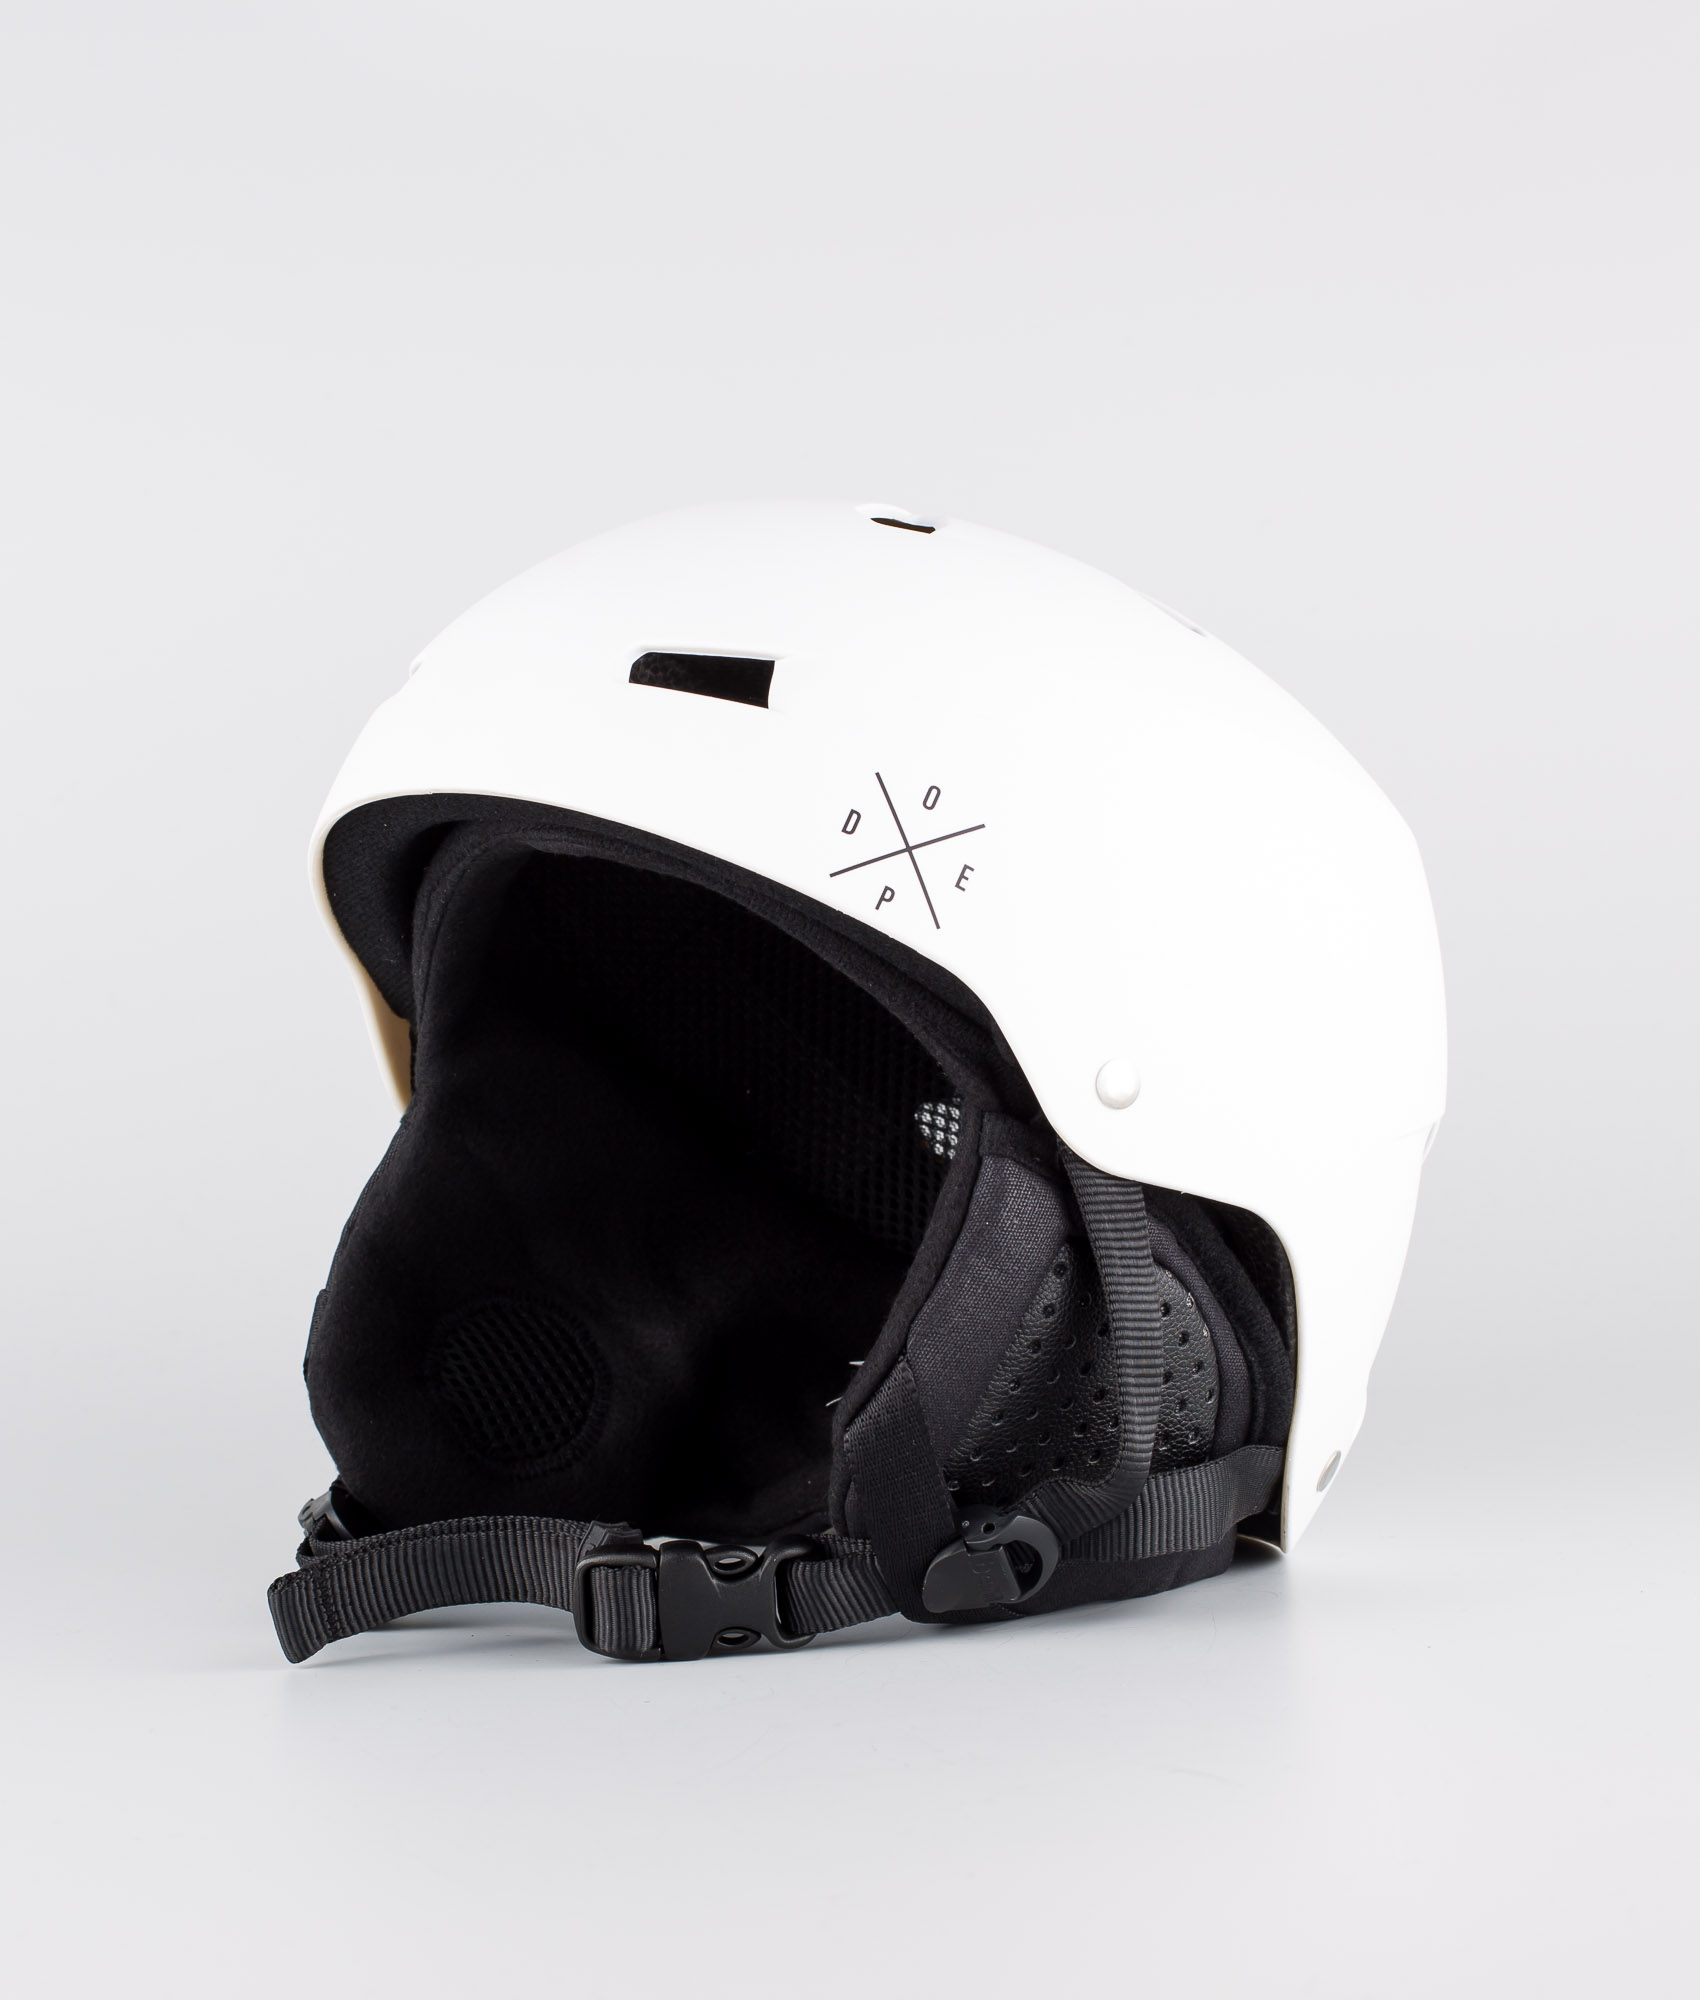 vans snowboard helmet